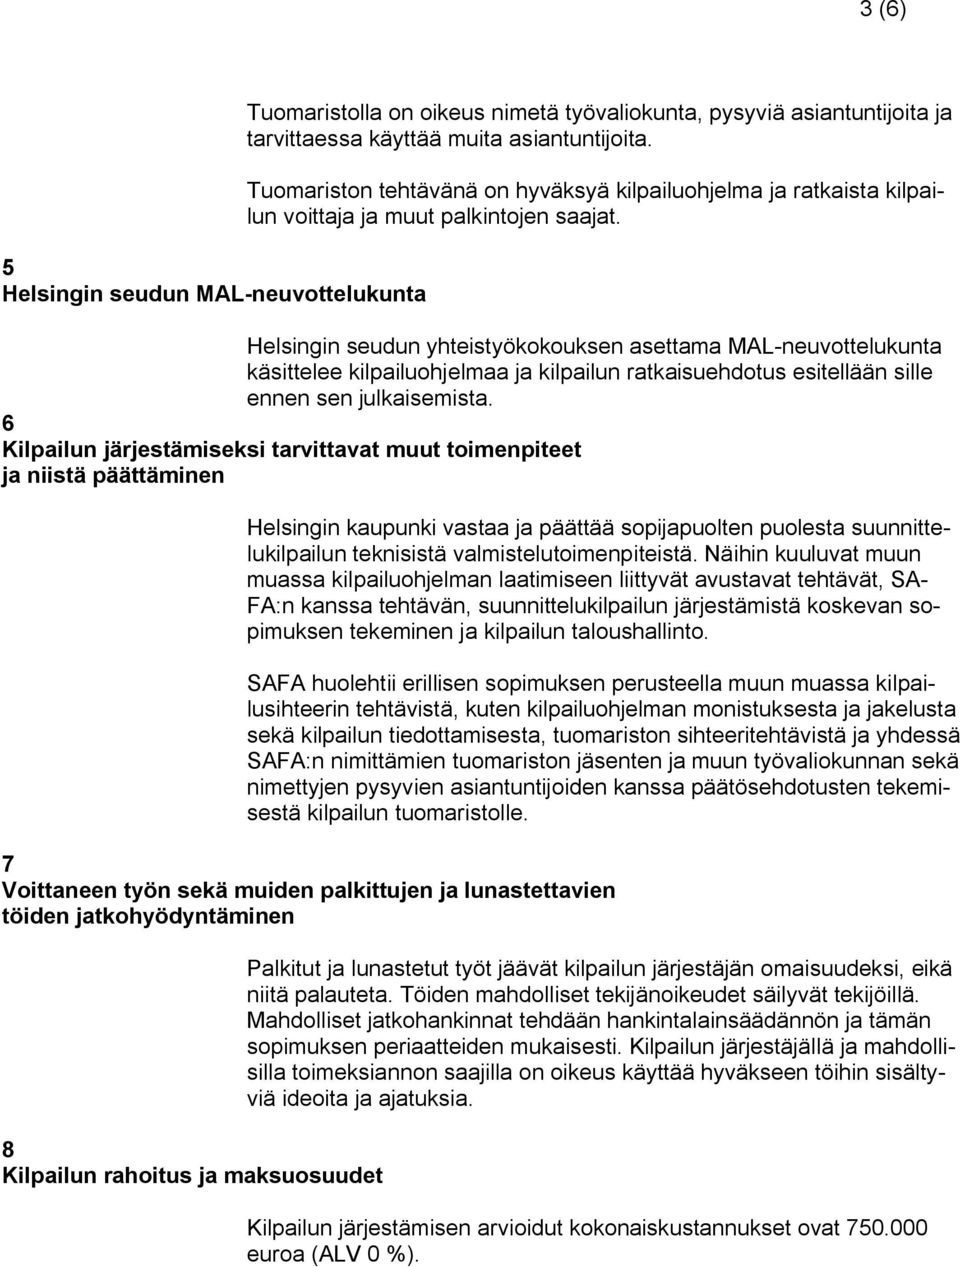 Helsingin seudun yhteistyökokouksen asettama MAL-neuvottelukunta käsittelee kilpailuohjelmaa ja kilpailun ratkaisuehdotus esitellään sille ennen sen julkaisemista.